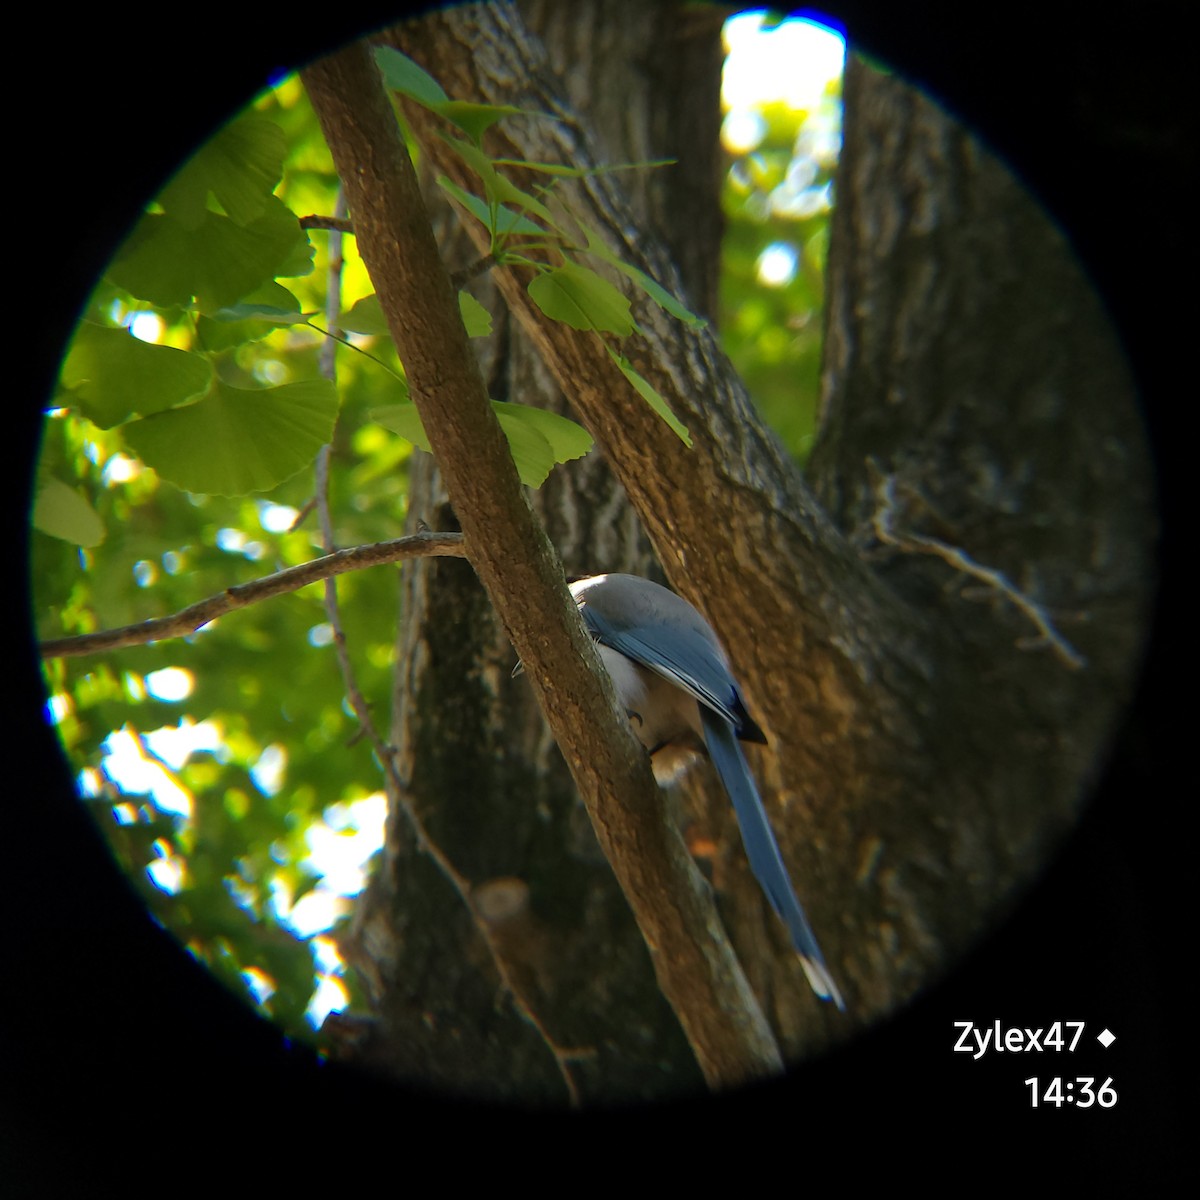 Azure-winged Magpie - Dusky Thrush